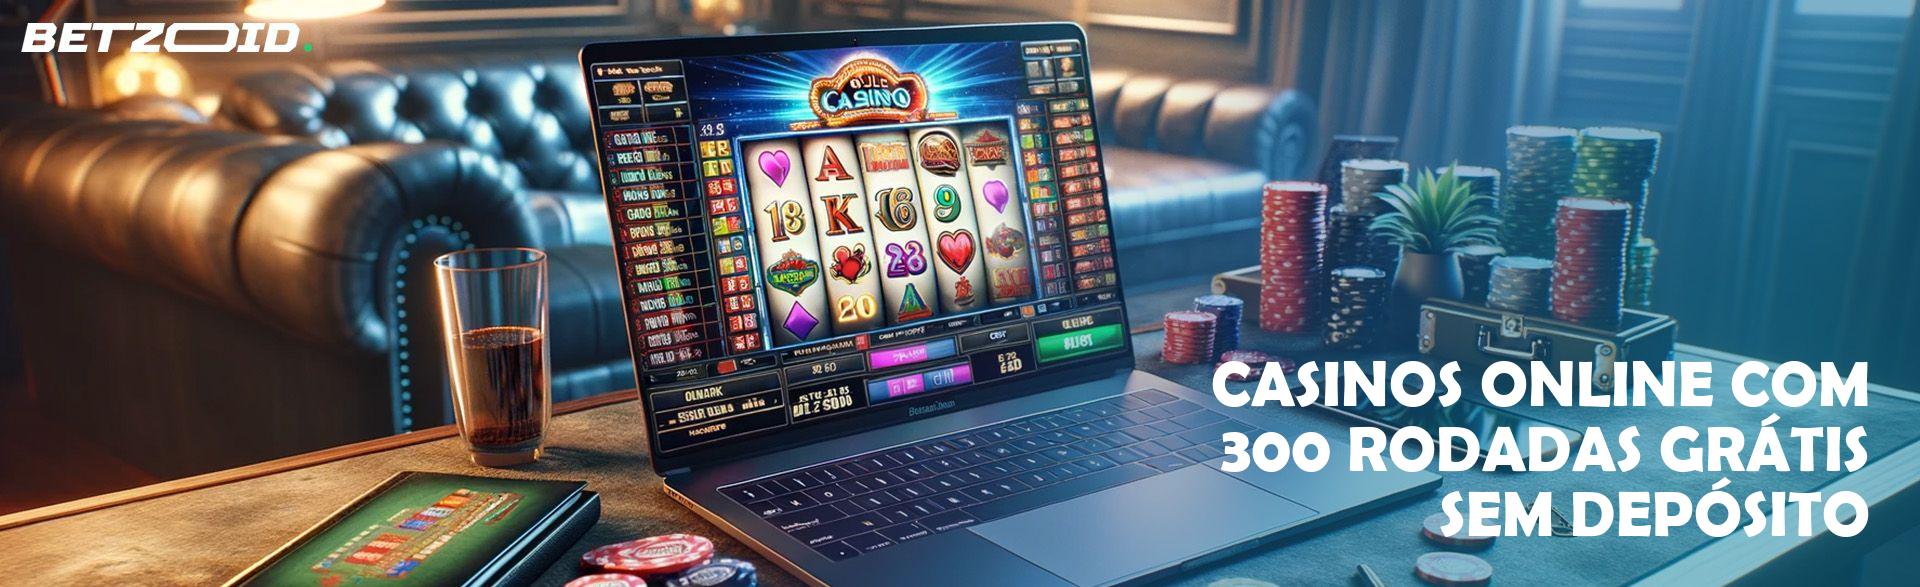 Casinos Online com 300 Rodadas Grátis sem Depósito.